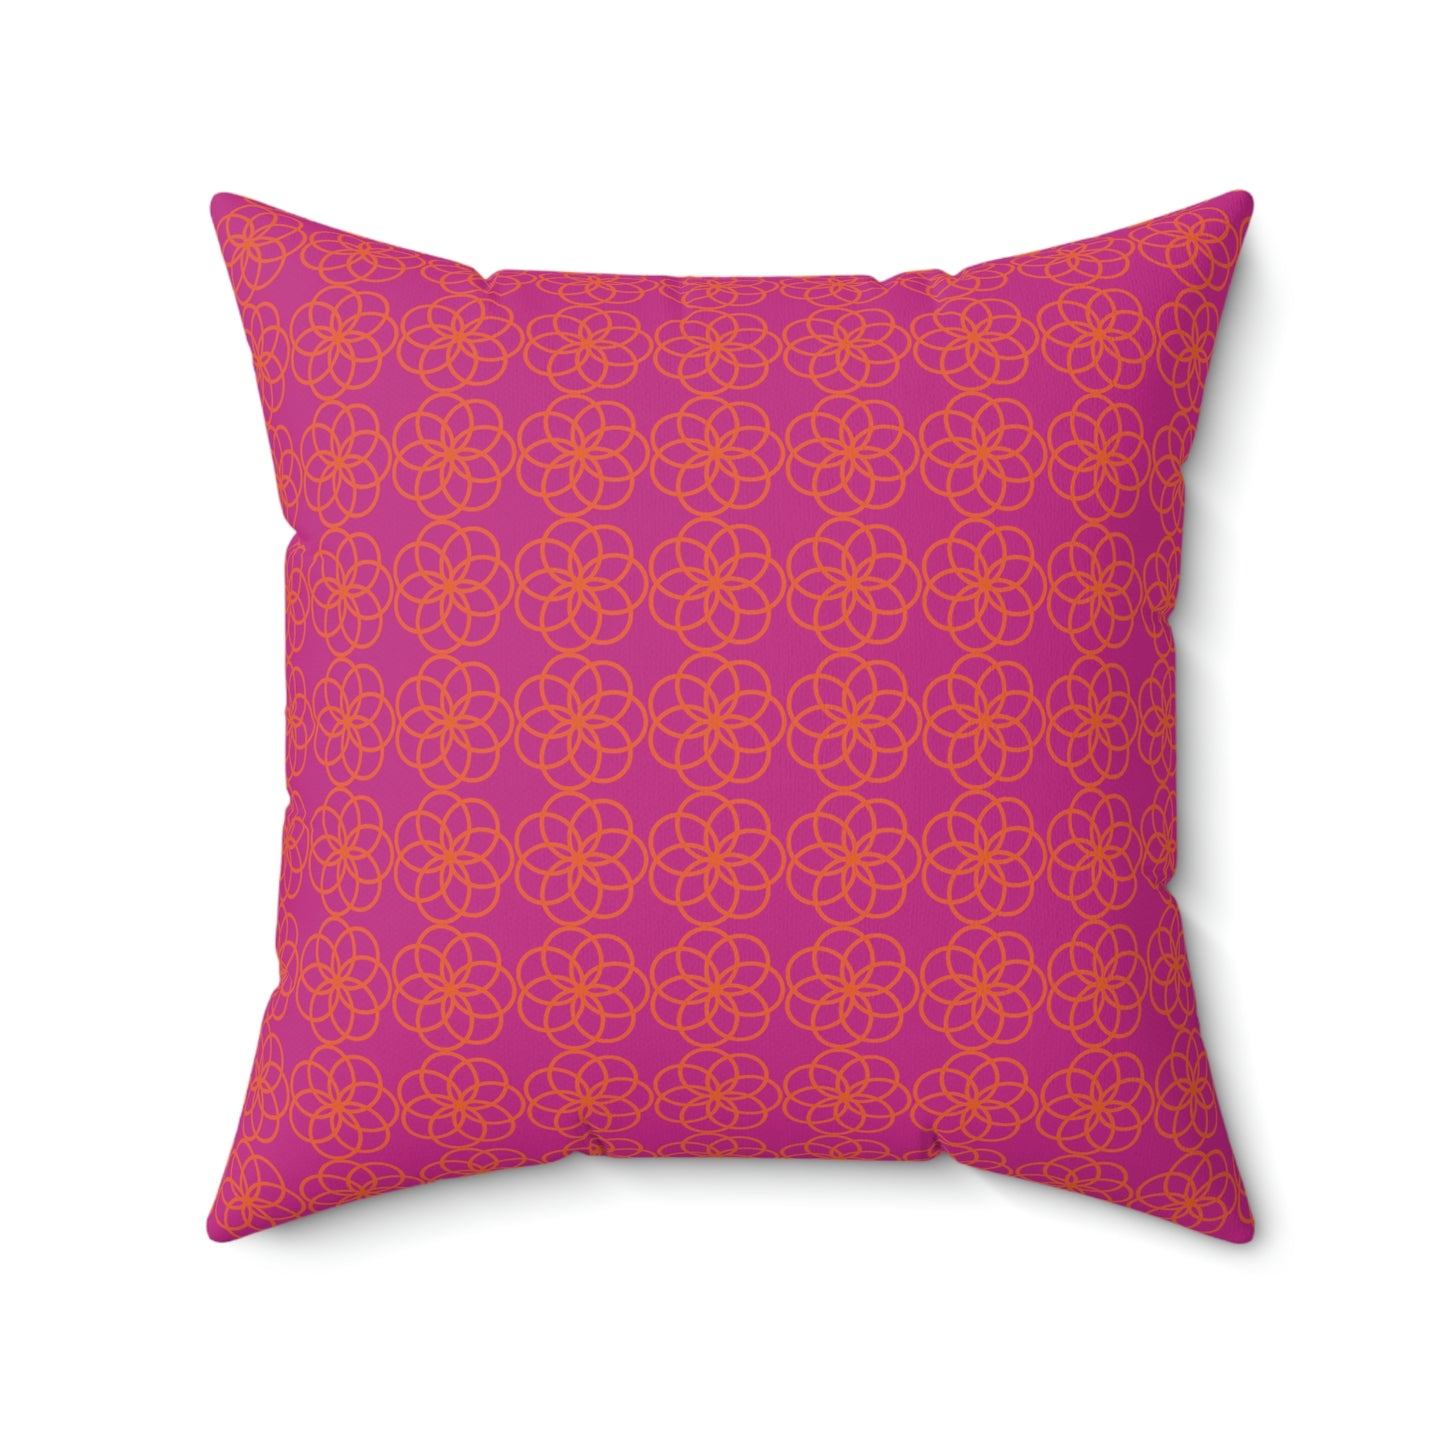 Spun Polyester Square Pillow Case “Spiral Circles on Pink”